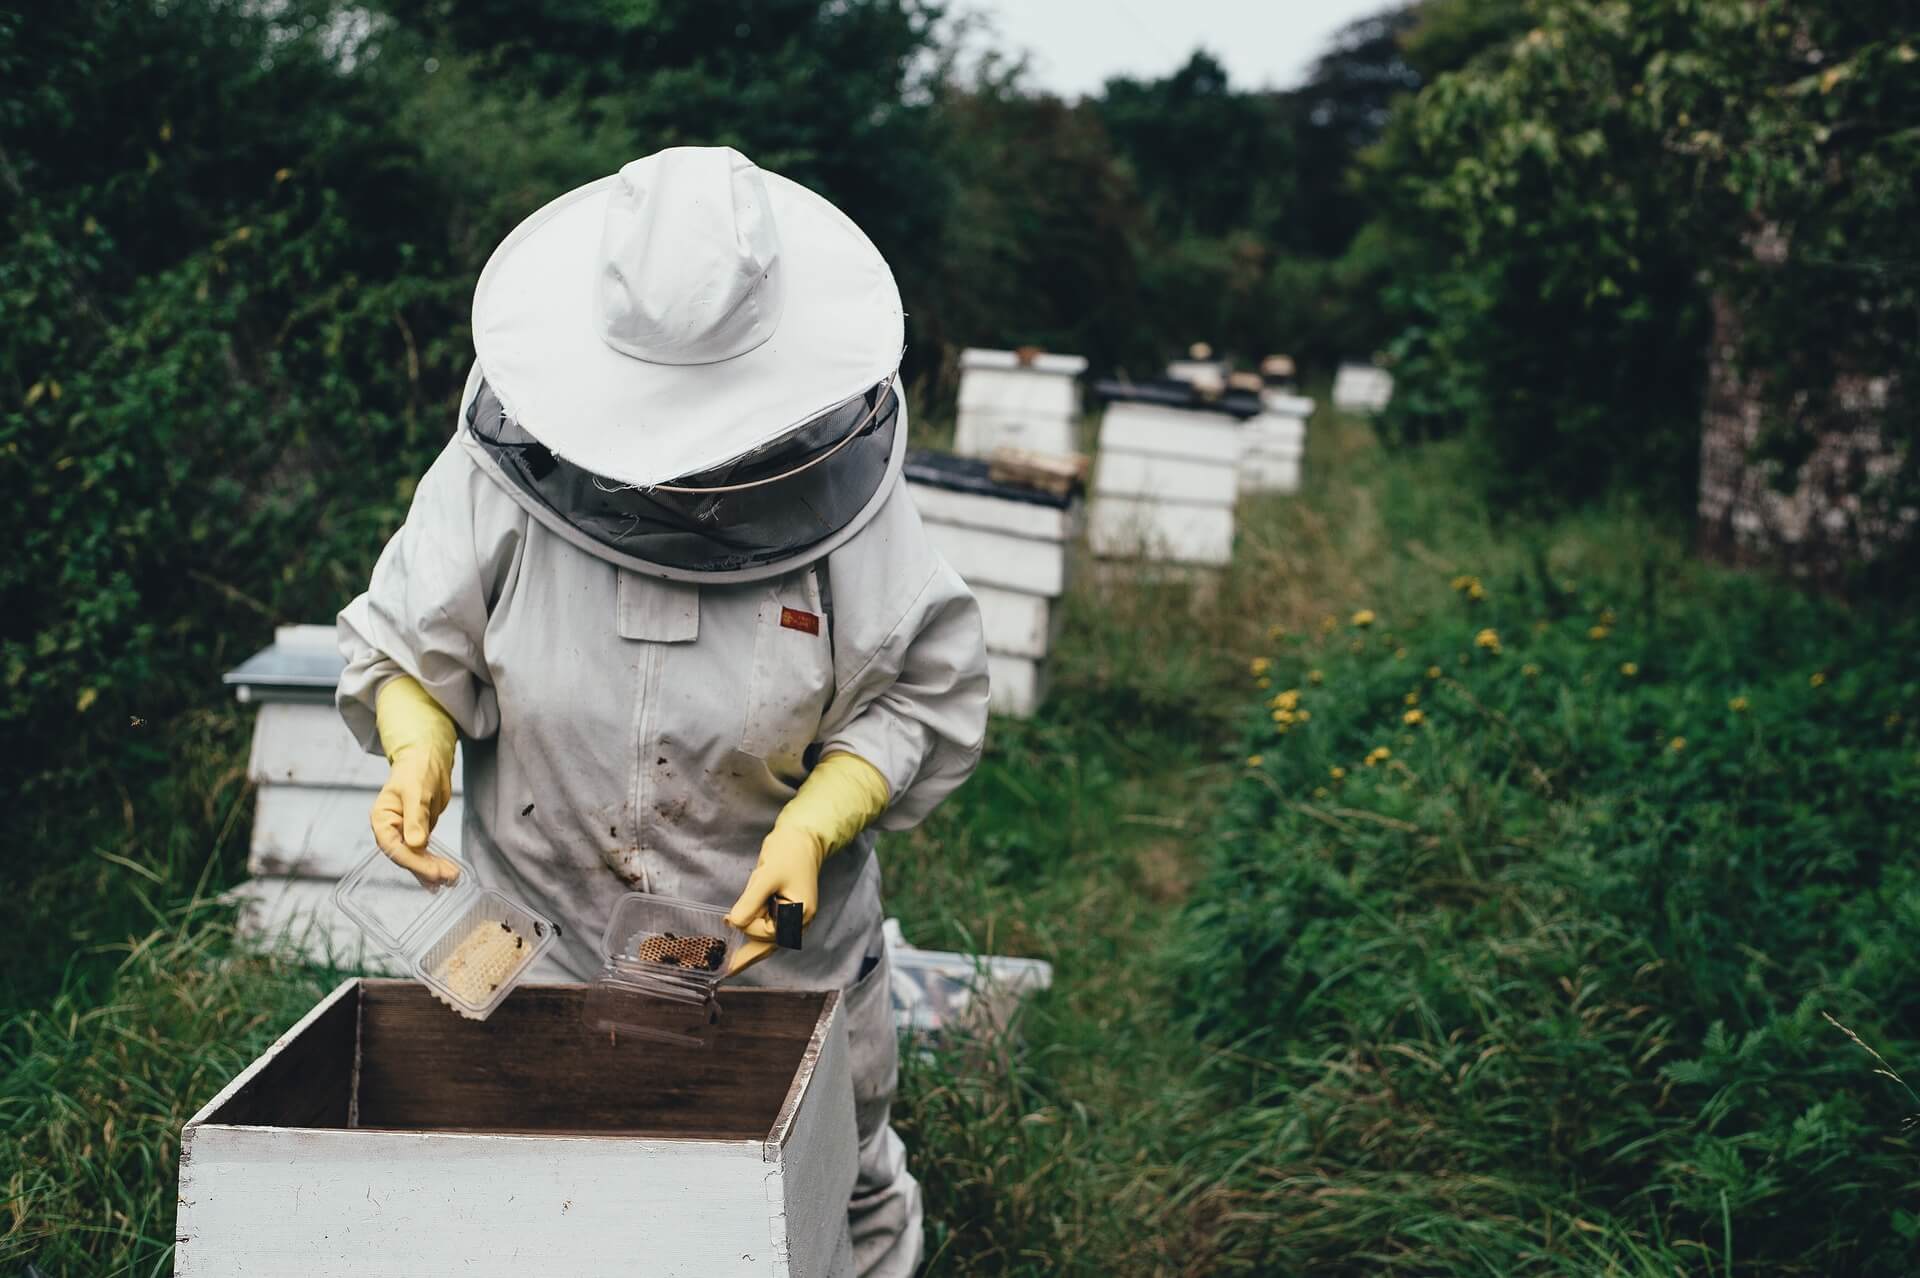 Los apicultores confirman la presencia de la avispa velutina en Palencia